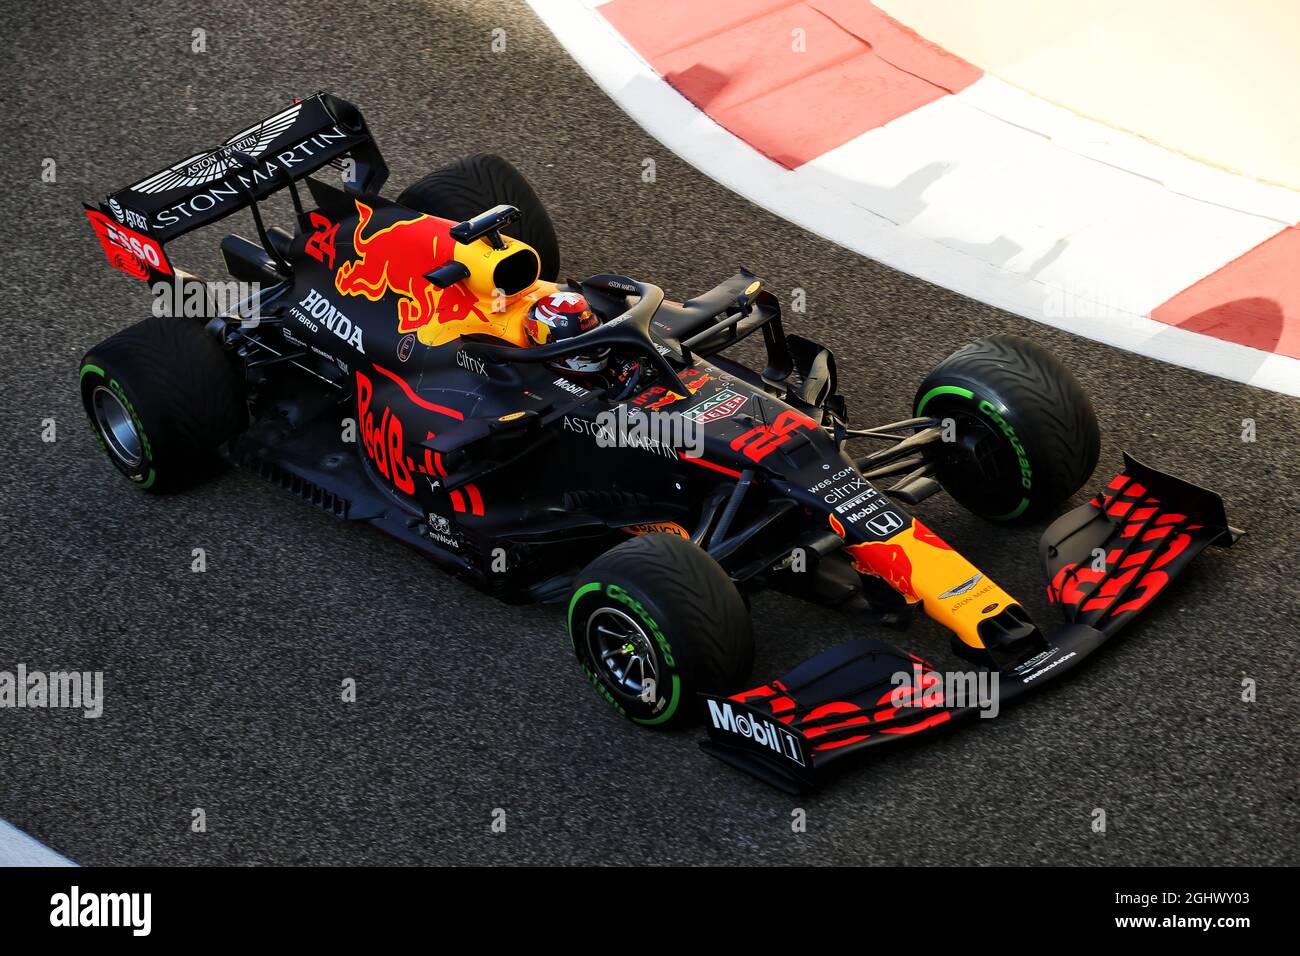 Sebastien Buemi (SUI) pilote de test RB16 Red Bull Racing. 15.12.2020. Test  de formule 1, circuit Yas Marina, Abu Dhabi, mardi. Le crédit photo doit  être lu : images XPB/Press Association Photo